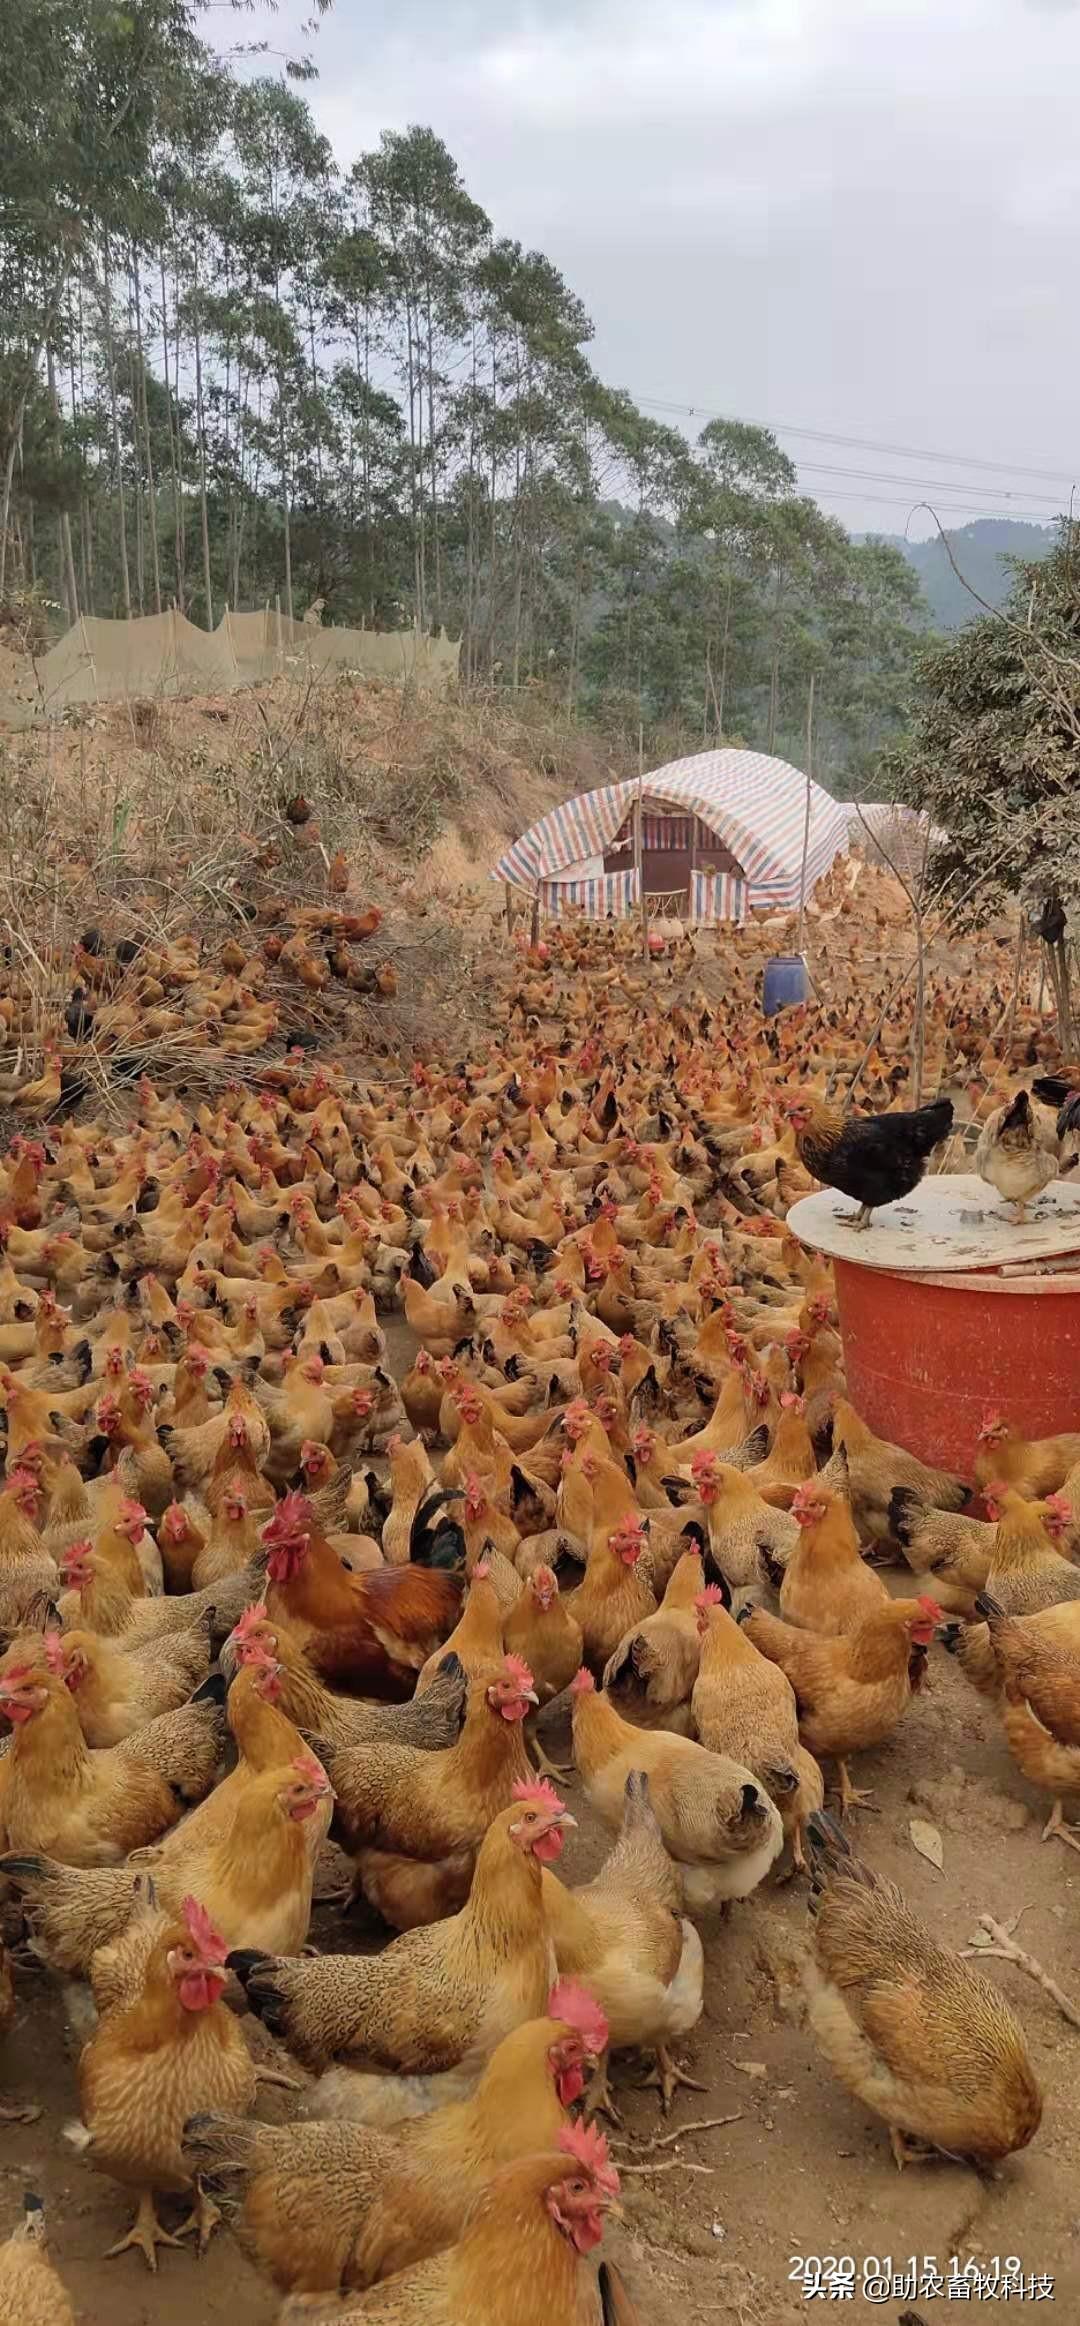 视频: 一组使用部分发酵饲料养鸡现场视频商品生物饲料销售成品【视频